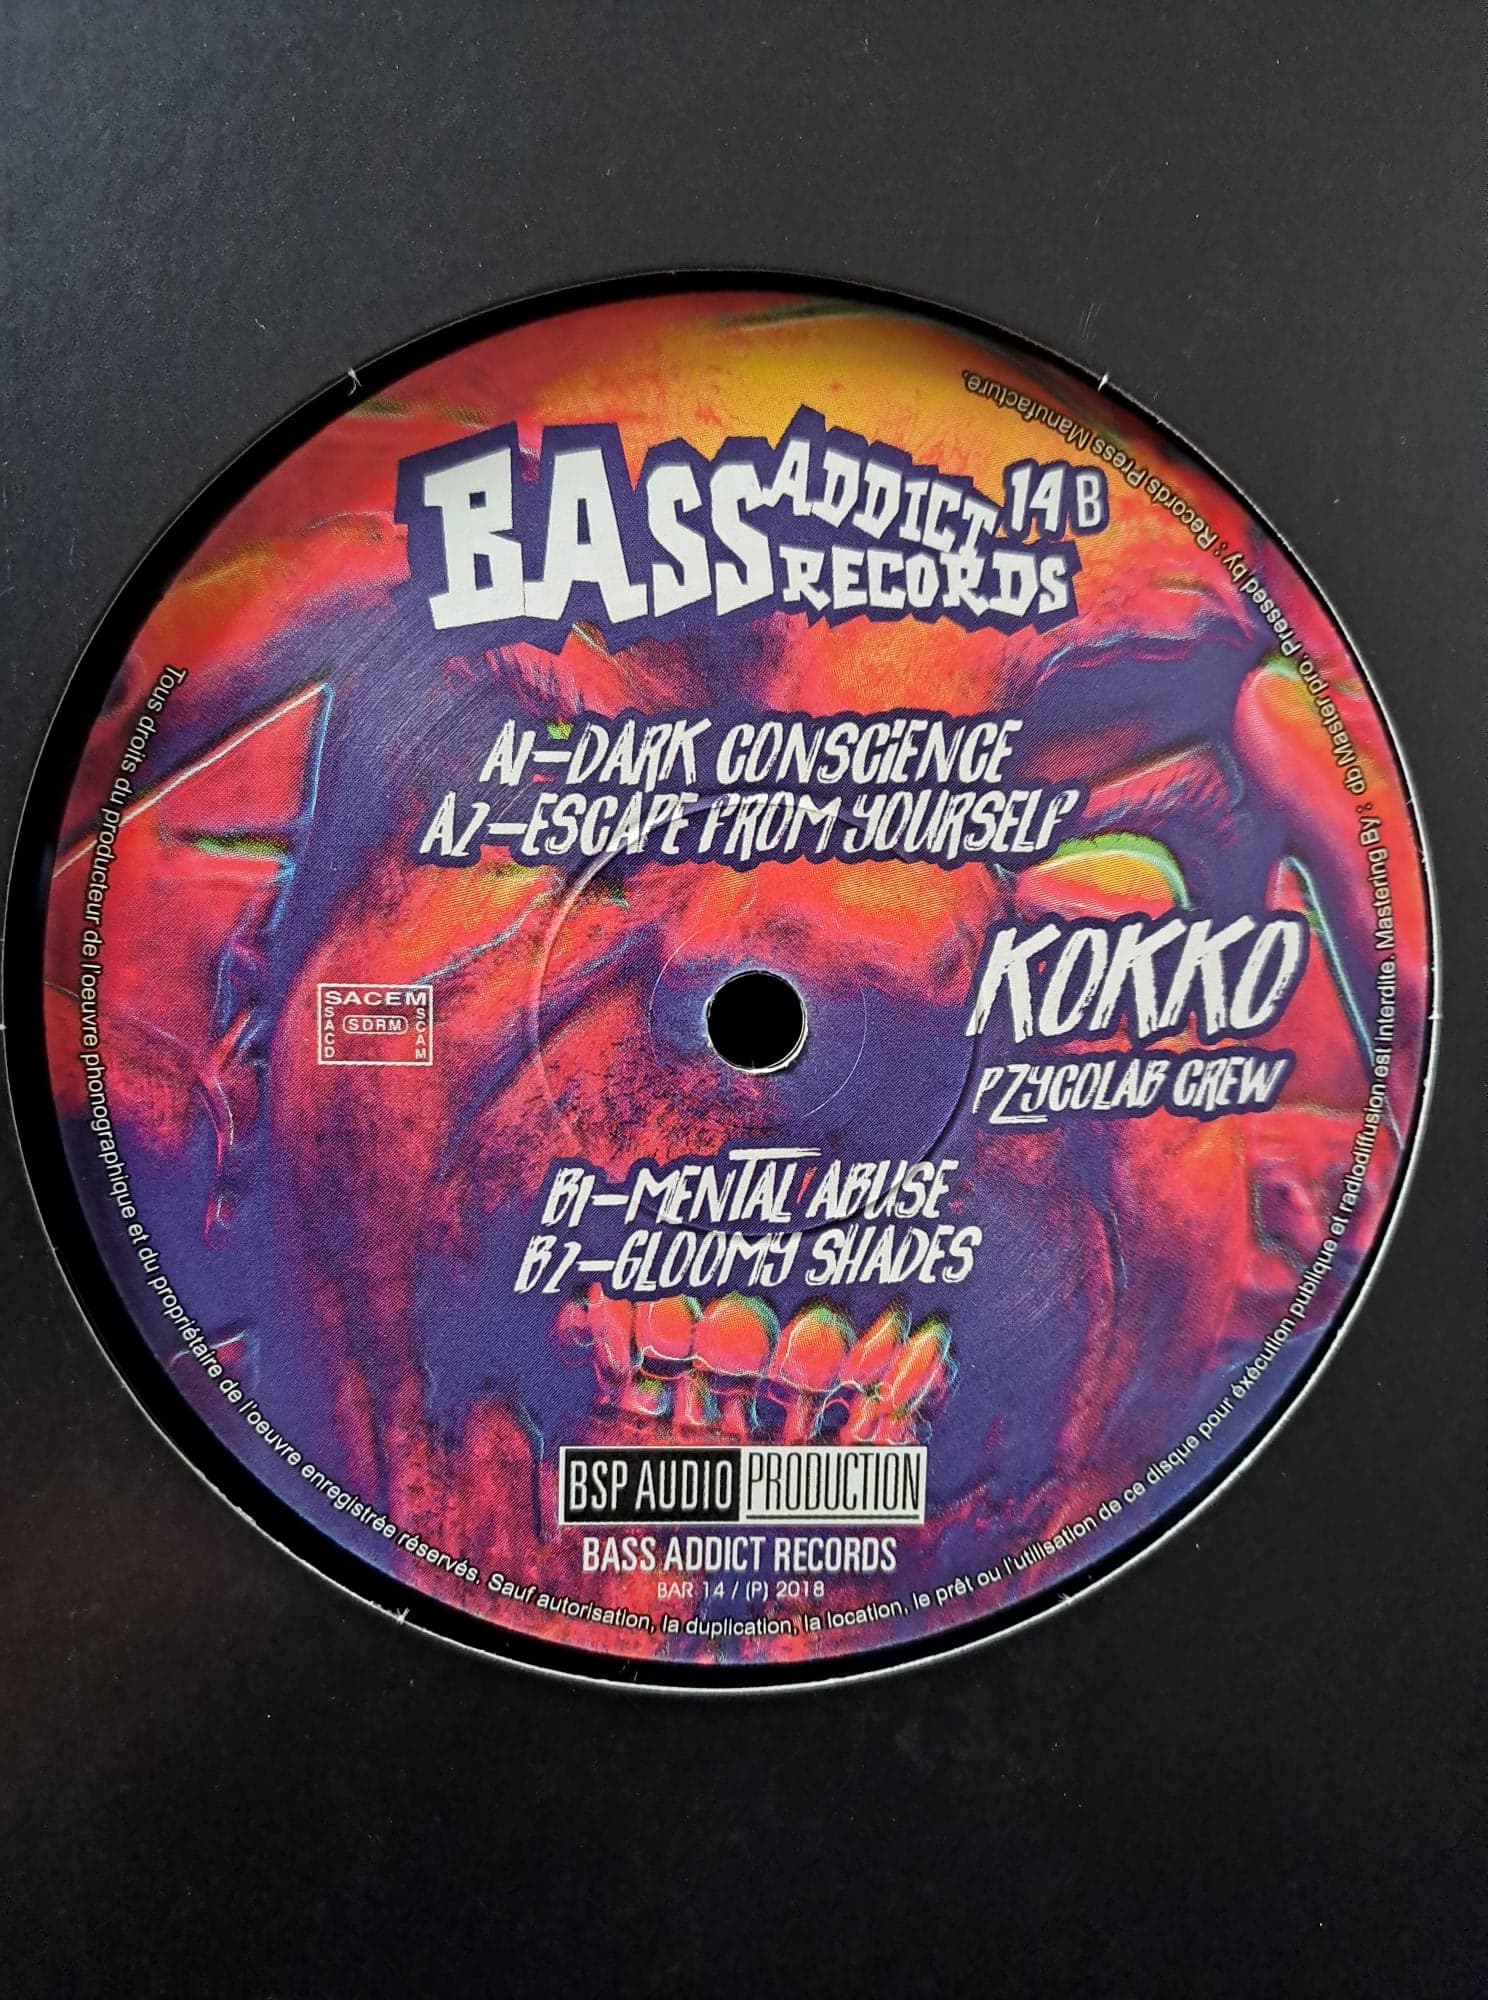 Bass Addict 14 - vinyle acidcore